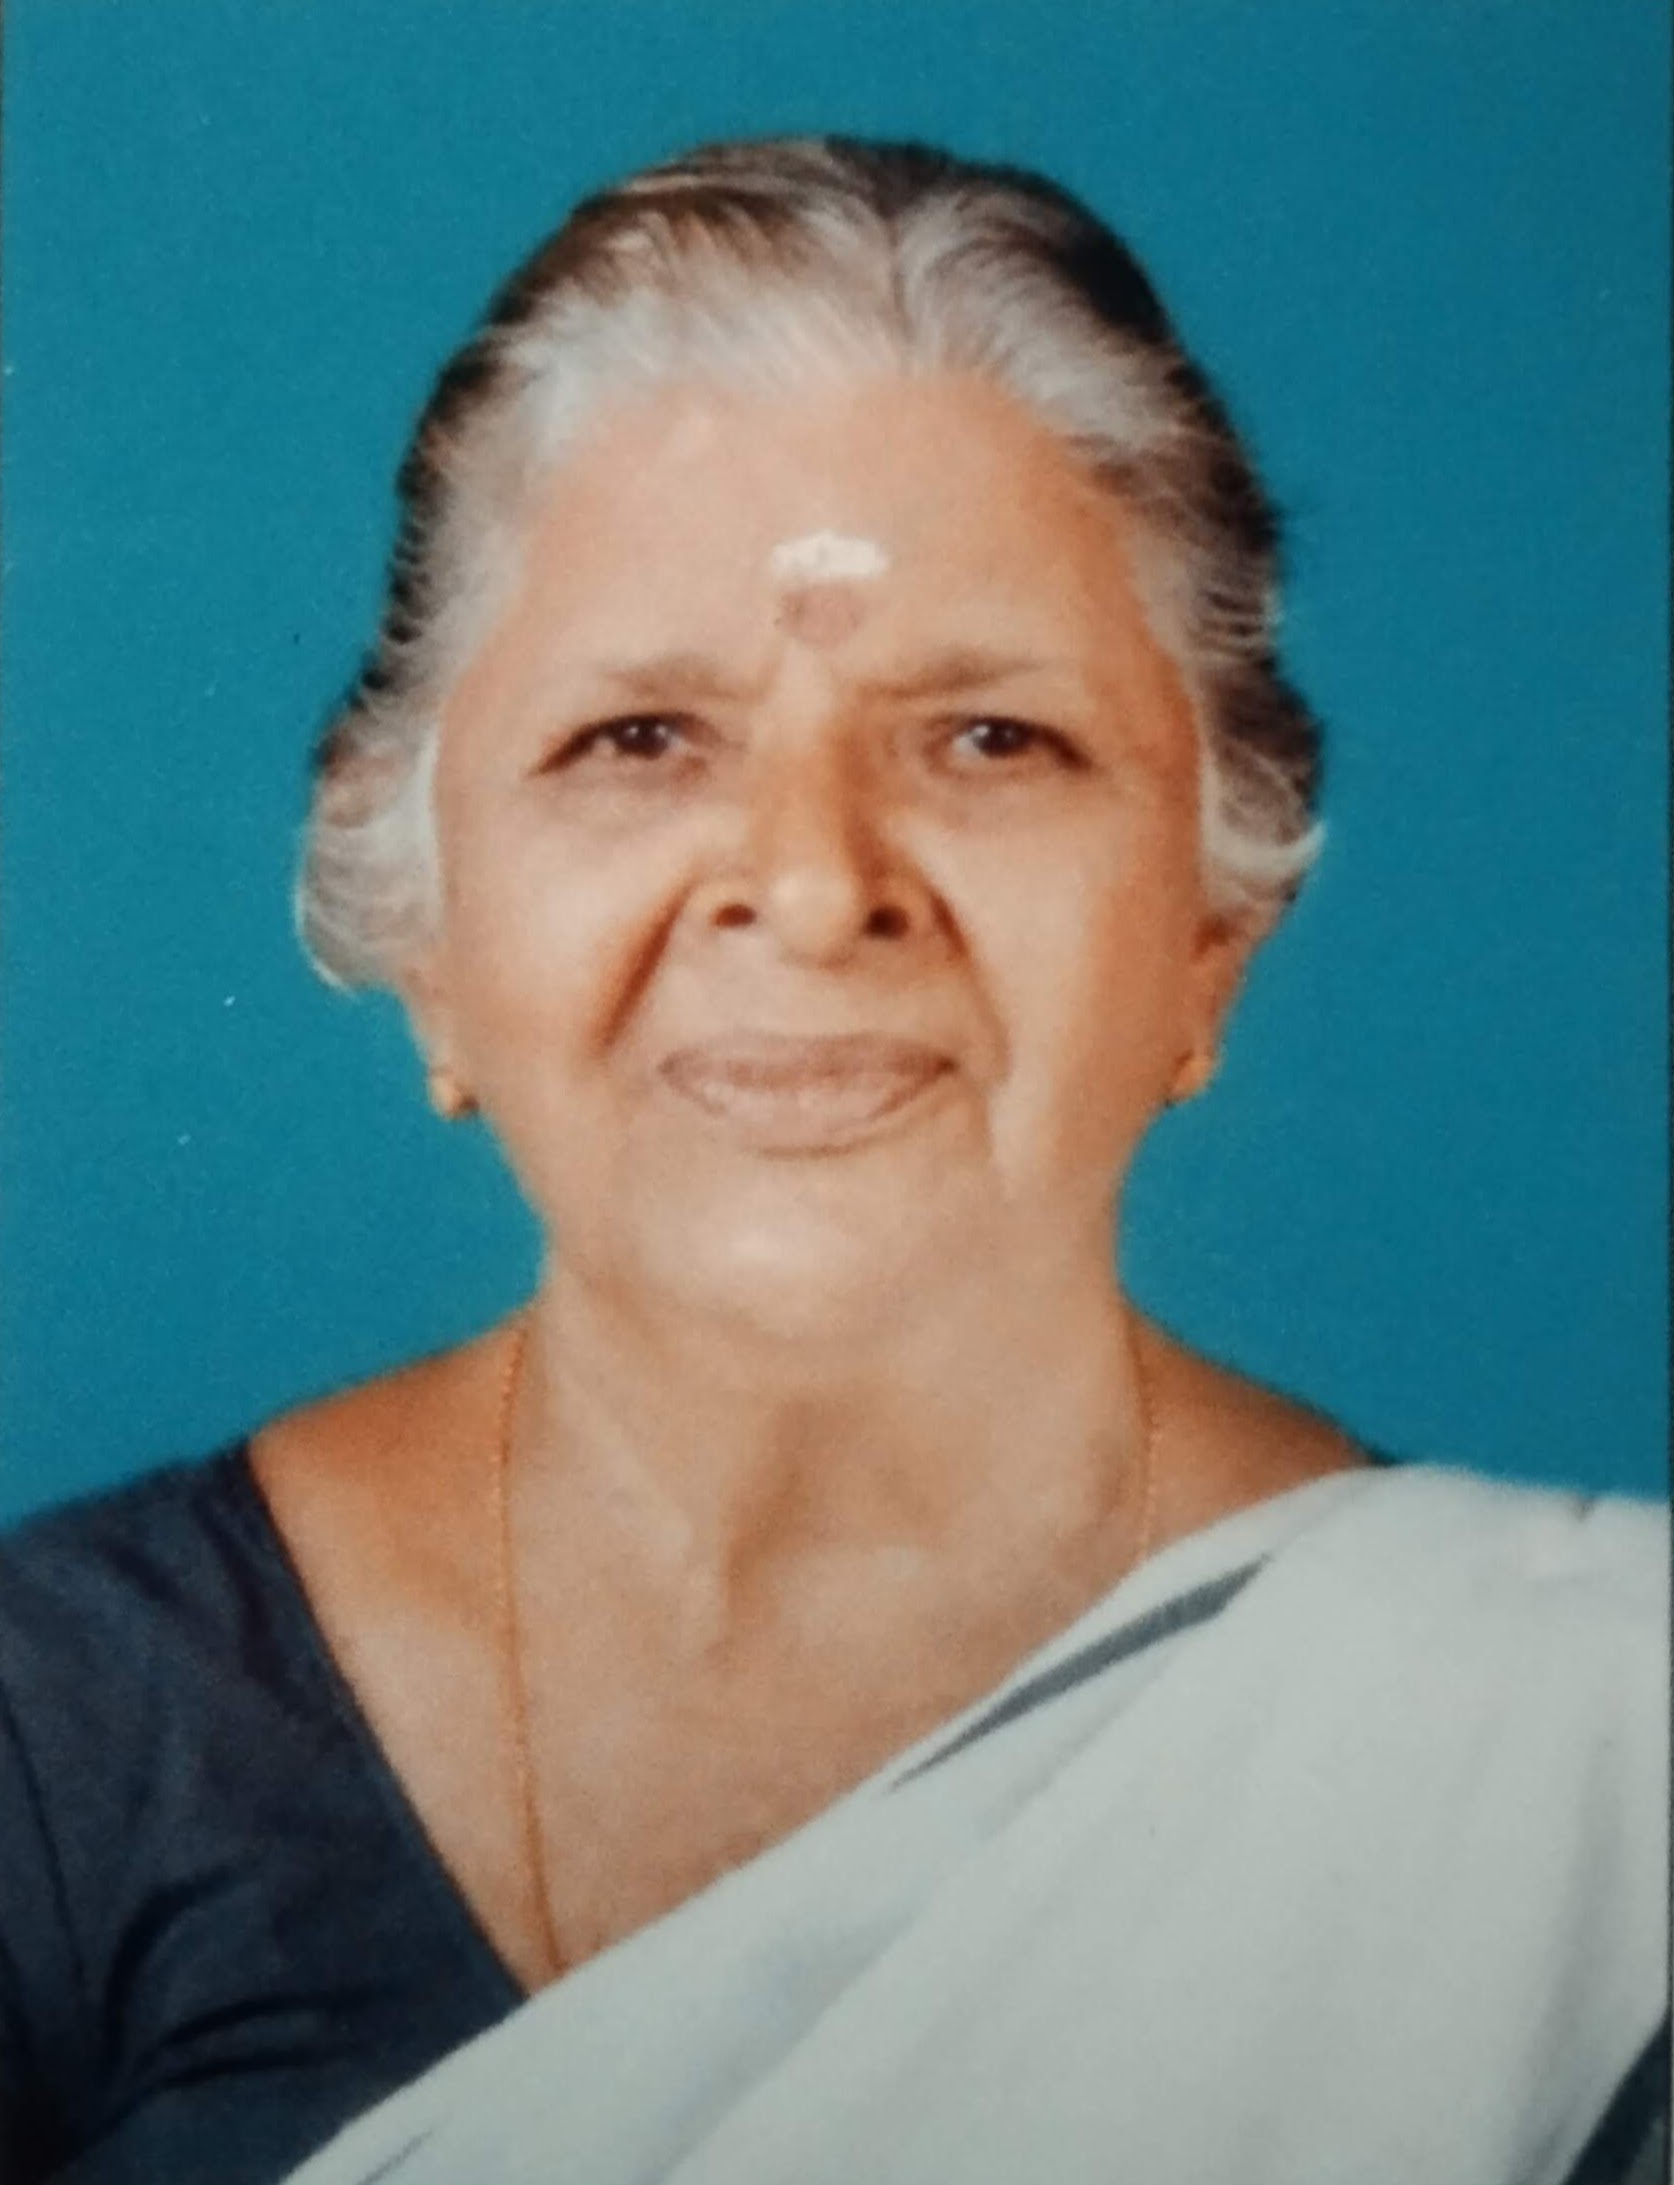 ഓലിക്കാട്ടിൽനാരായണി നാണു (88) അന്തരിച്ചു